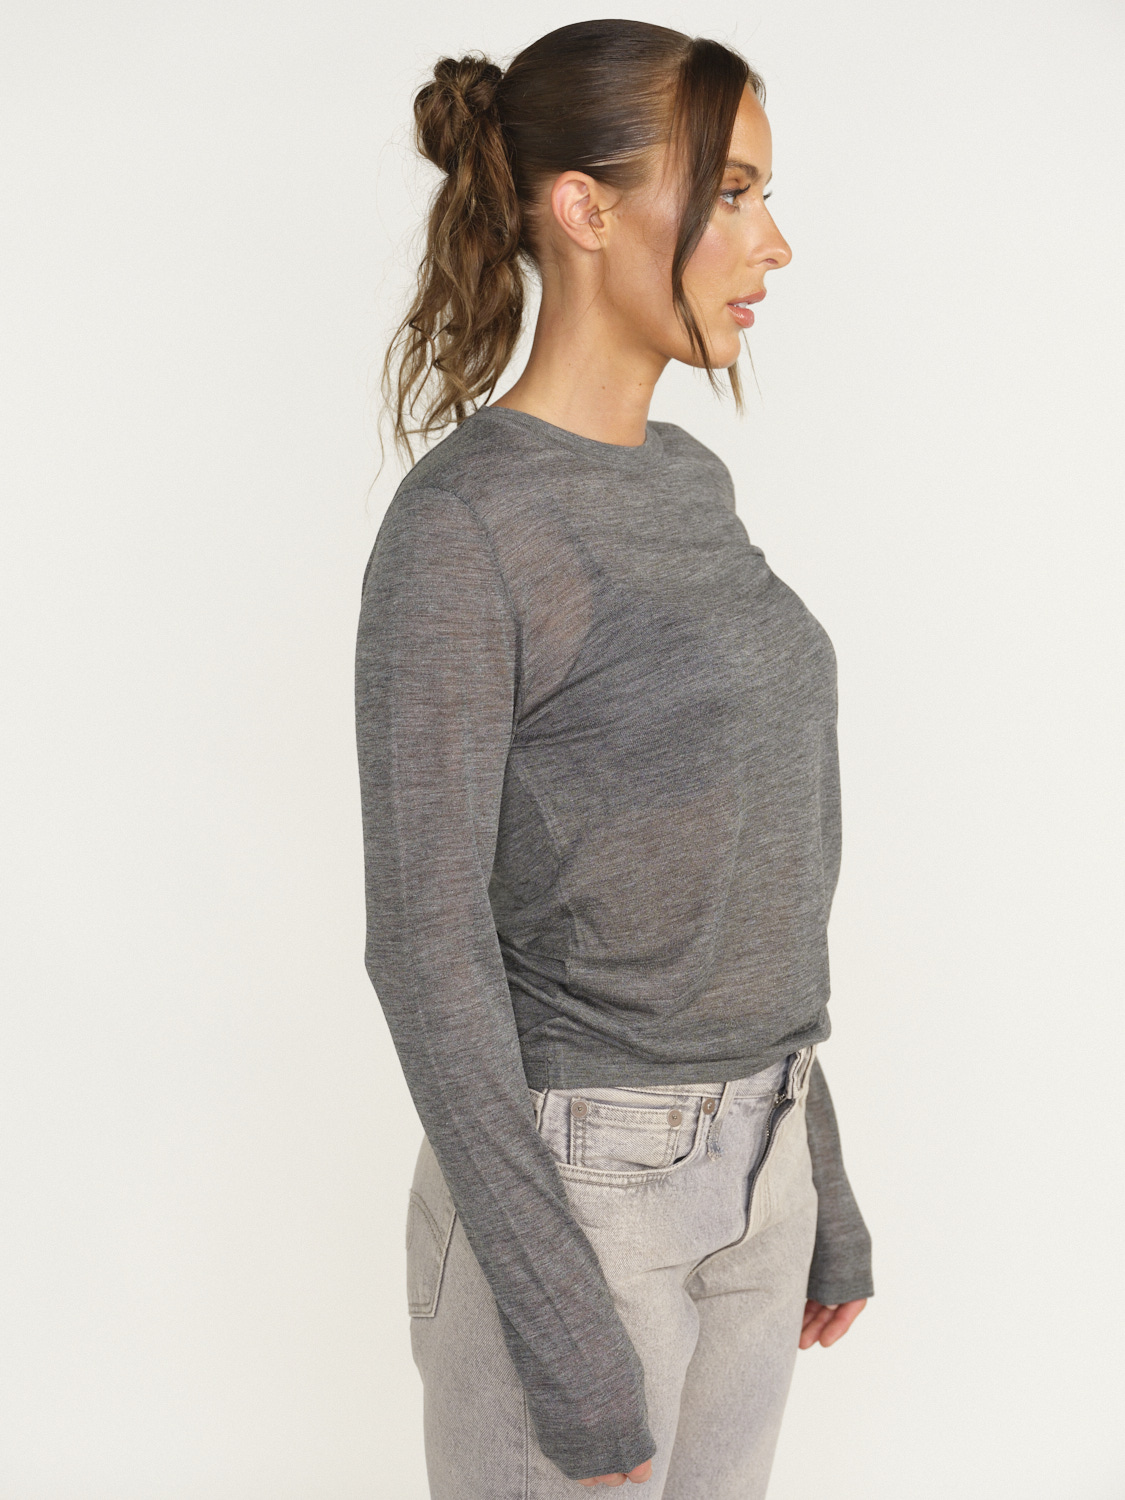 Nili Lotan Candice Sweater - T-shirt manches longues en soie gris S